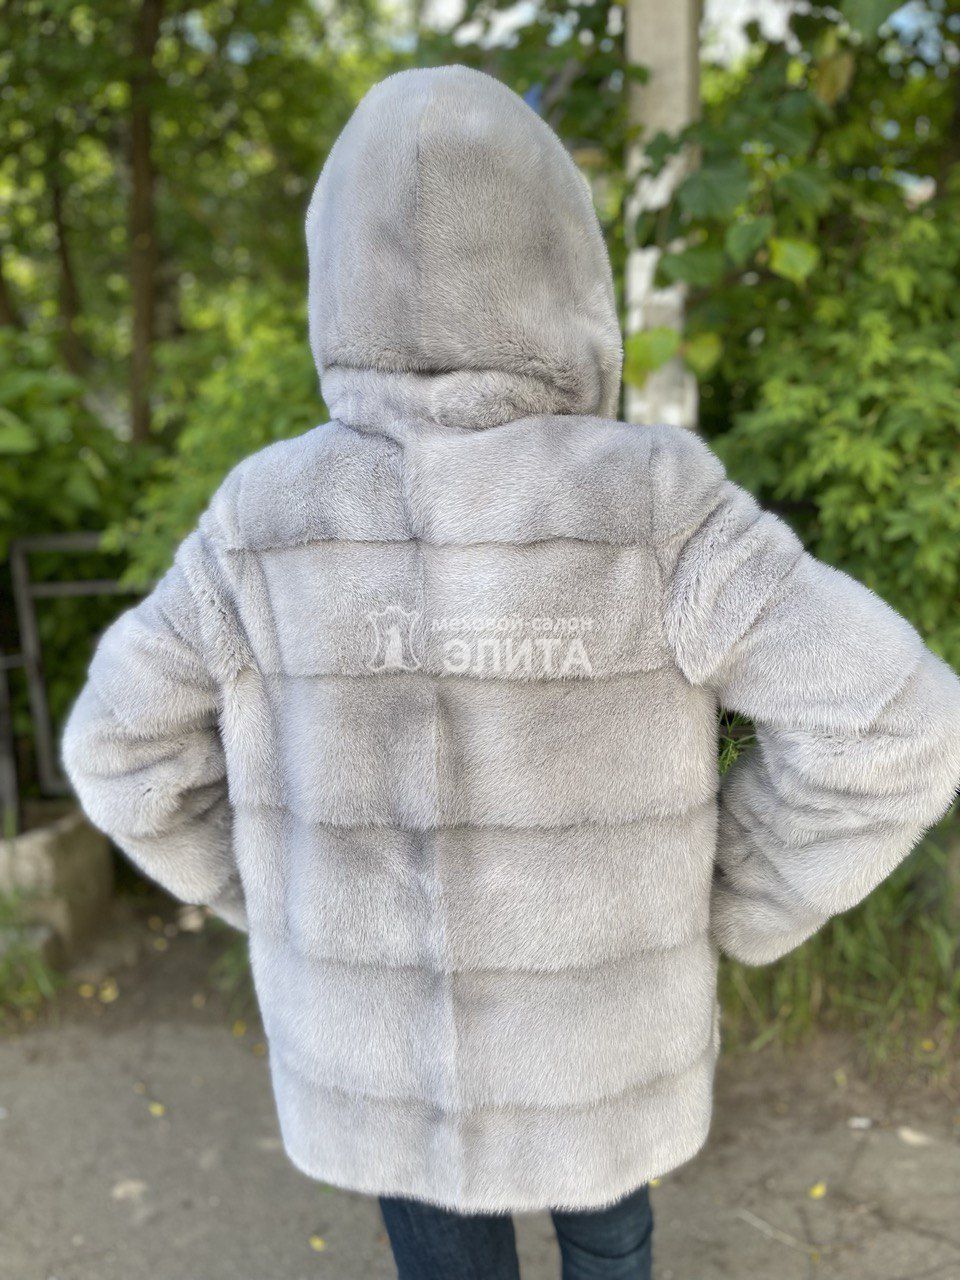 Куртка из норки S-1069, р-р 42-48, цена 67500 рублей в интернет-магазине кожи и меха ЭЛИТА. Вид 2